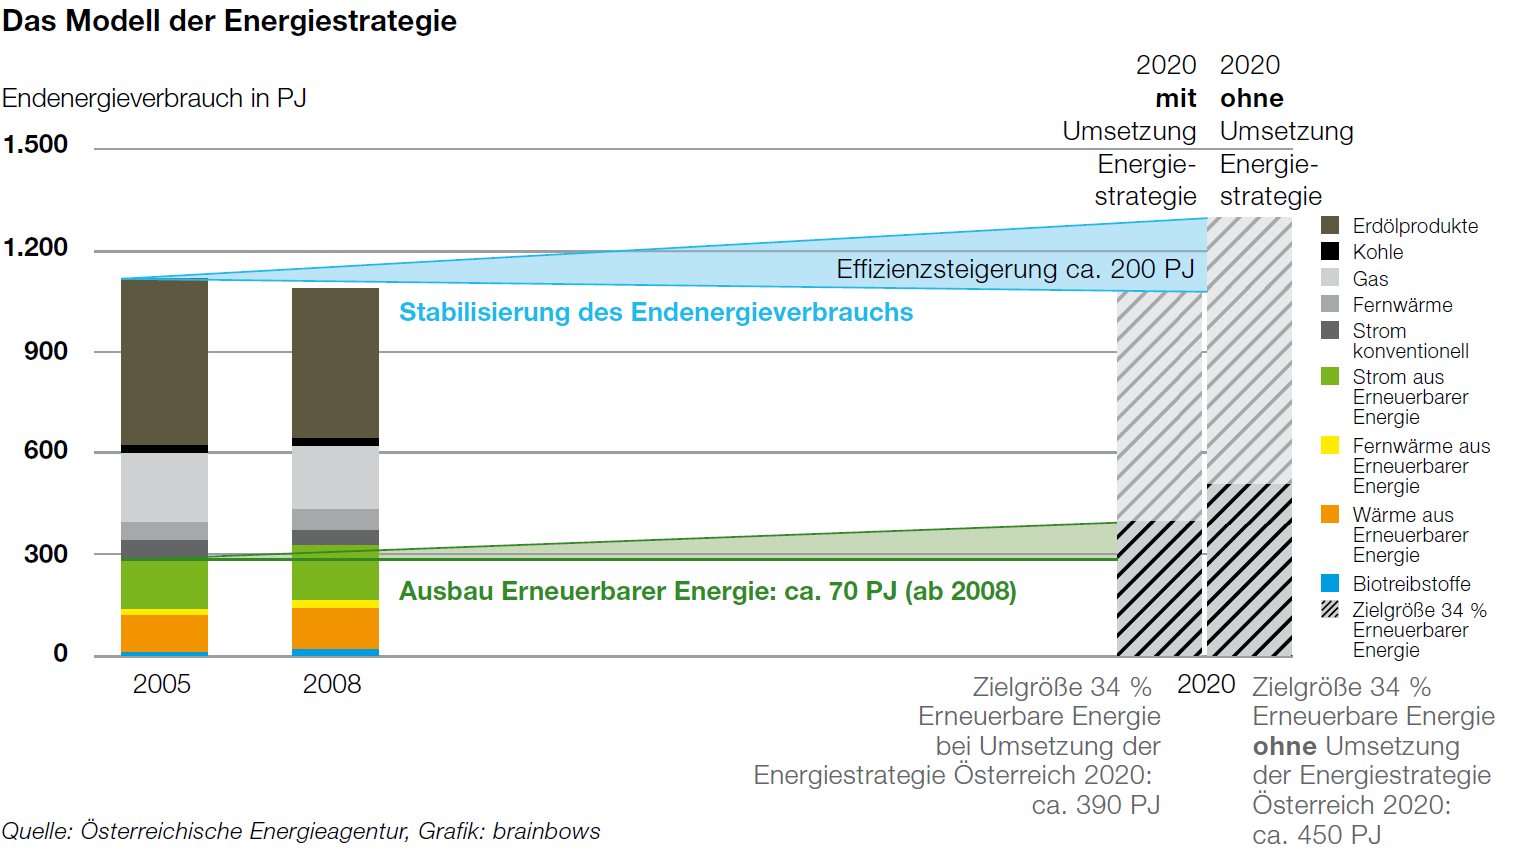 2. Die drei Ziele der österreichischen Energiepolitik